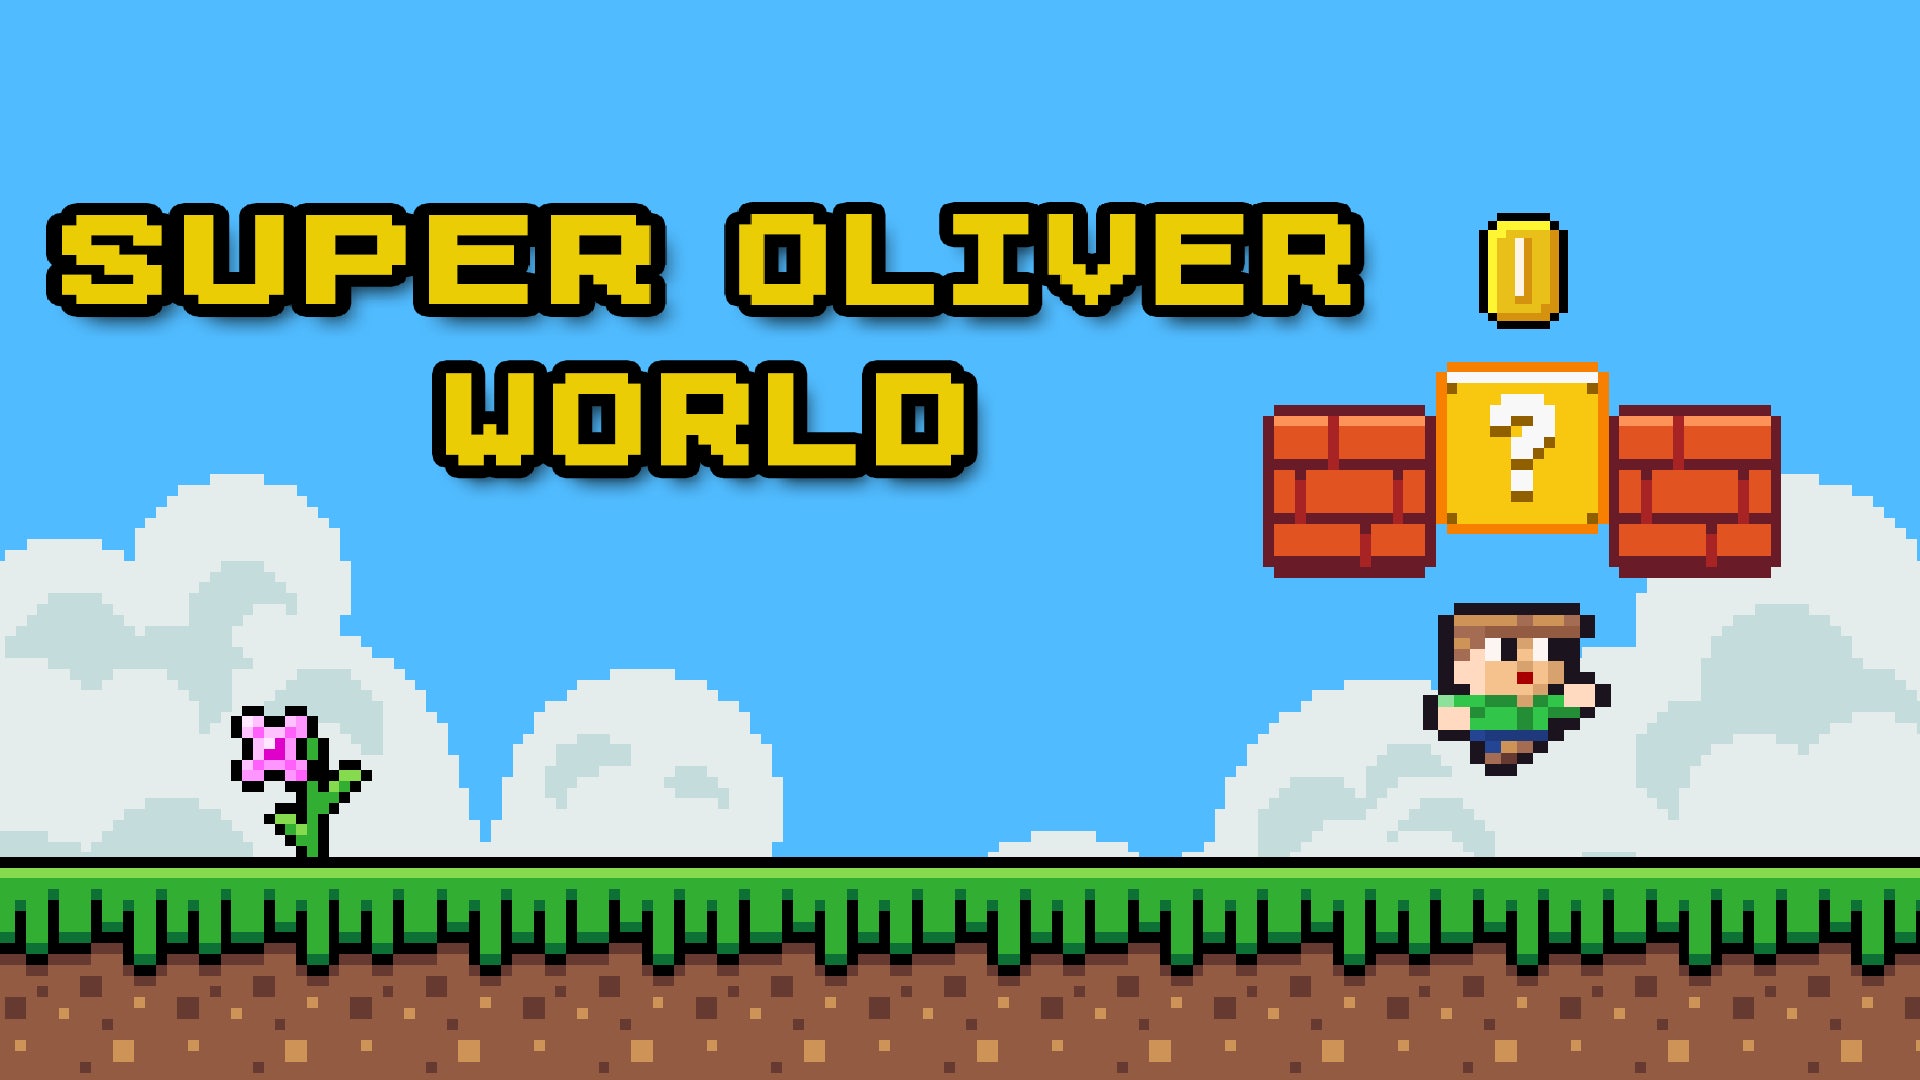 Super Oliver World